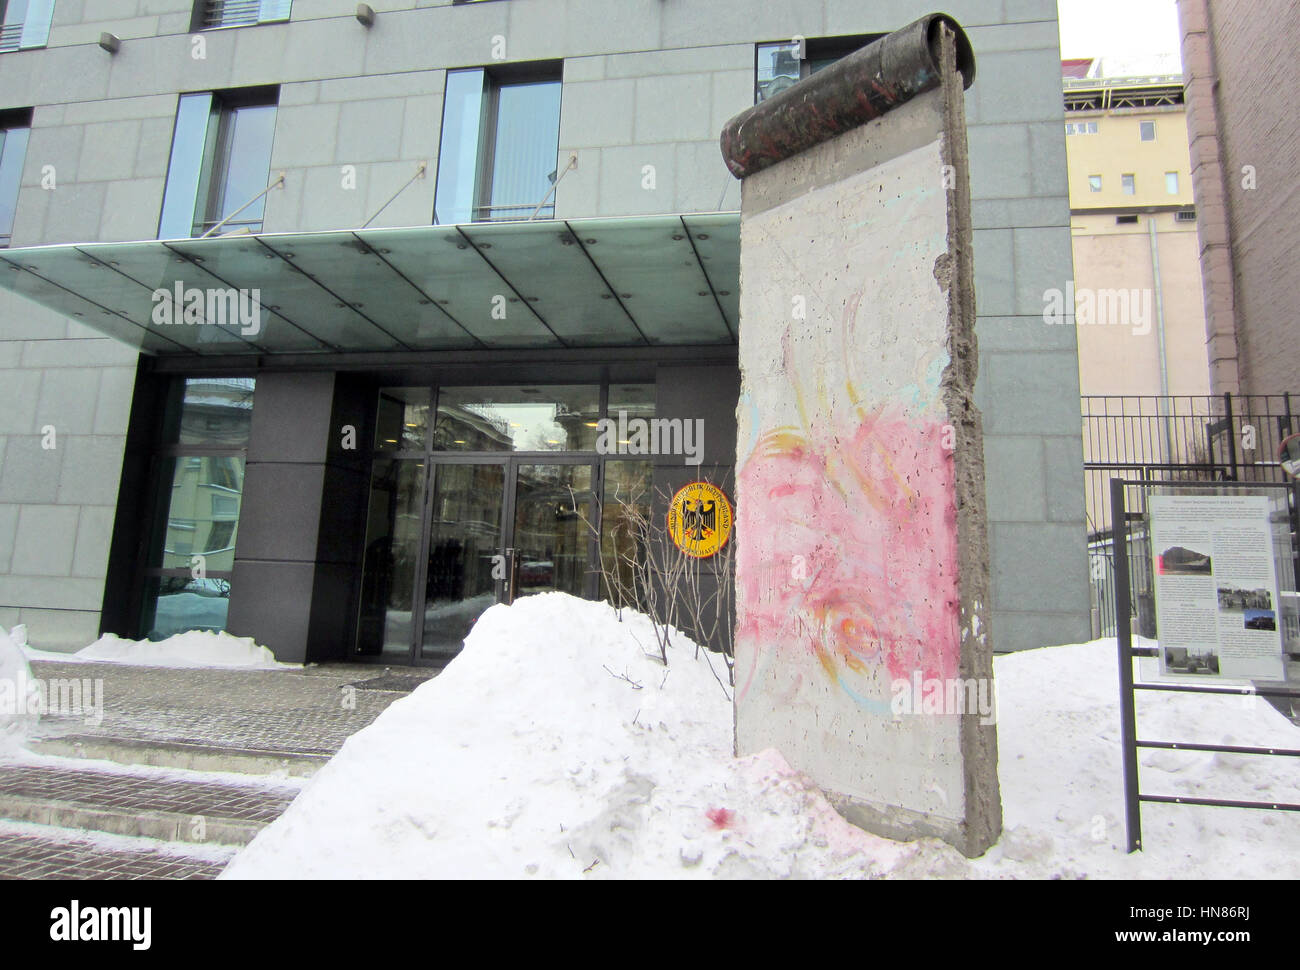 Ein Stück der Berliner Mauer auf dem Display vor der deutschen Botschaft in Kiew in der Ukraine, 8. Februar 2017. Ukrainische Parlamentarier gesprüht das Wort "Nein" ("Nein") auf dem Denkmal aus Protest auf eine Bemerkung von der deutsche Botschafter in Land in Bezug auf Wahlen in der lankischen gesteuerte Donbass Region. Die Sprühfarbe wurde entfernt. Foto: Andreas Stein/dpa Stockfoto